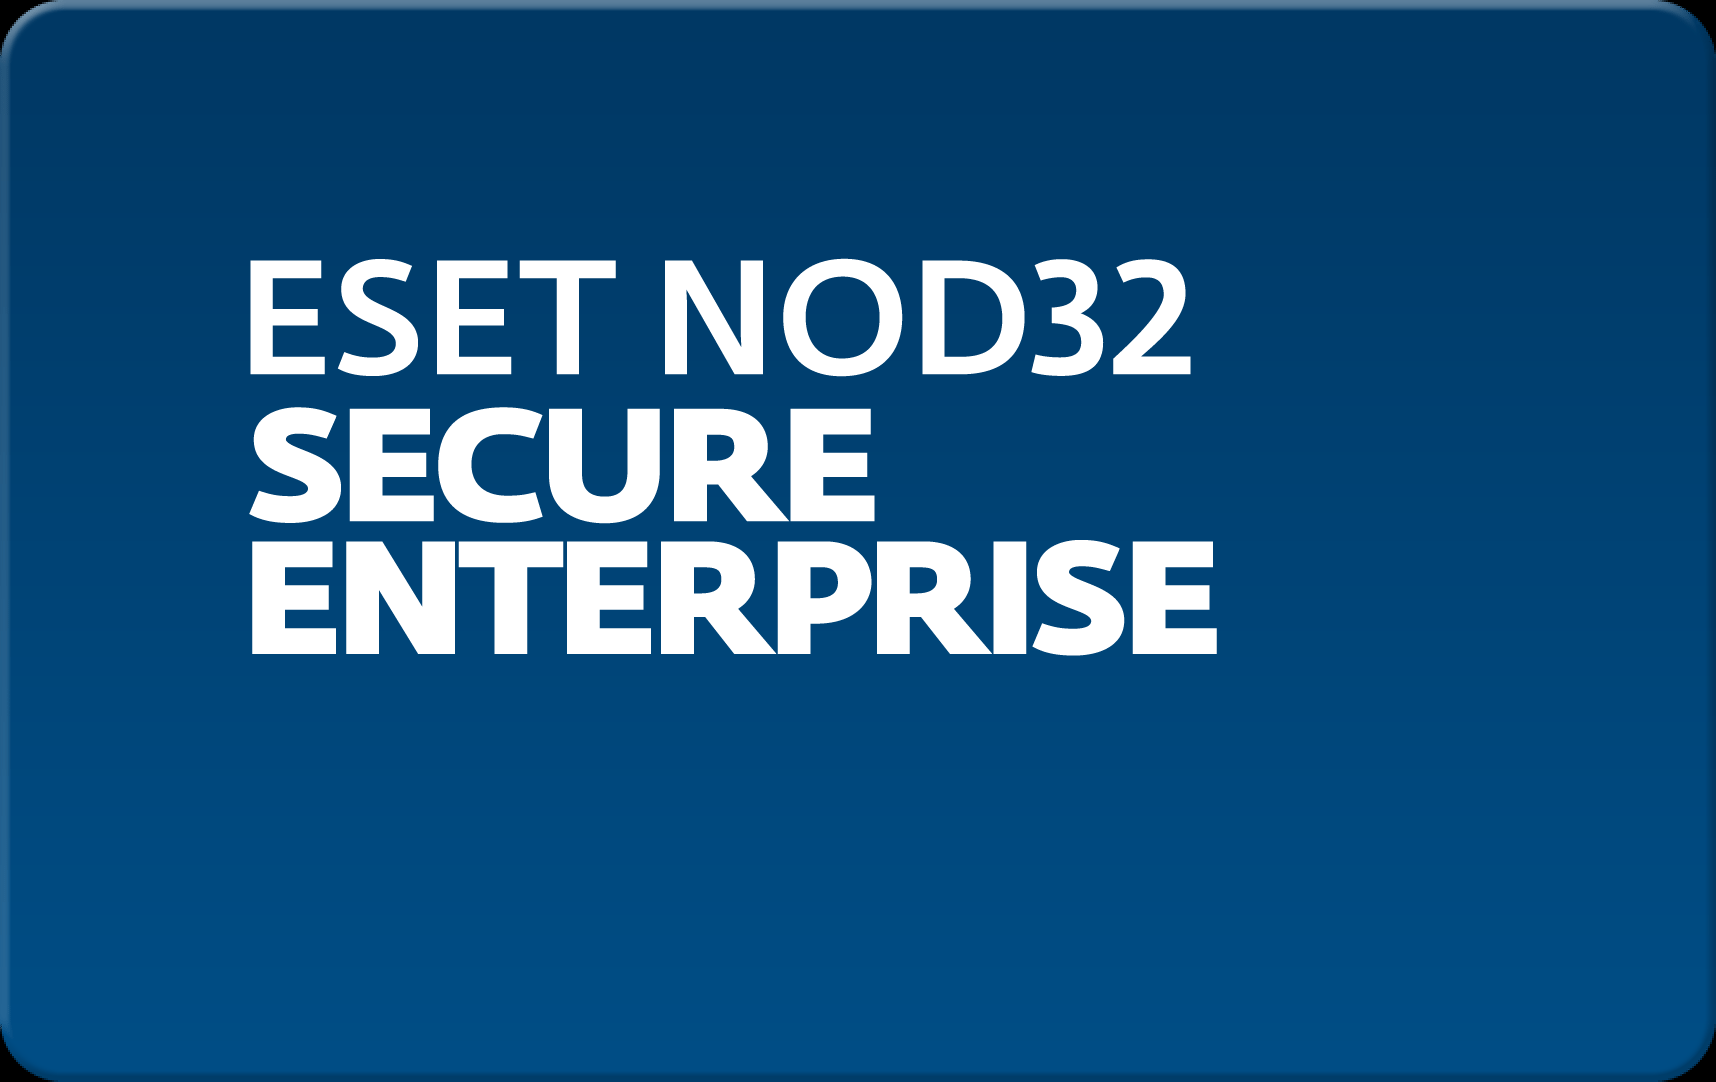        Eset NOD32 Secure Enterprise  163 